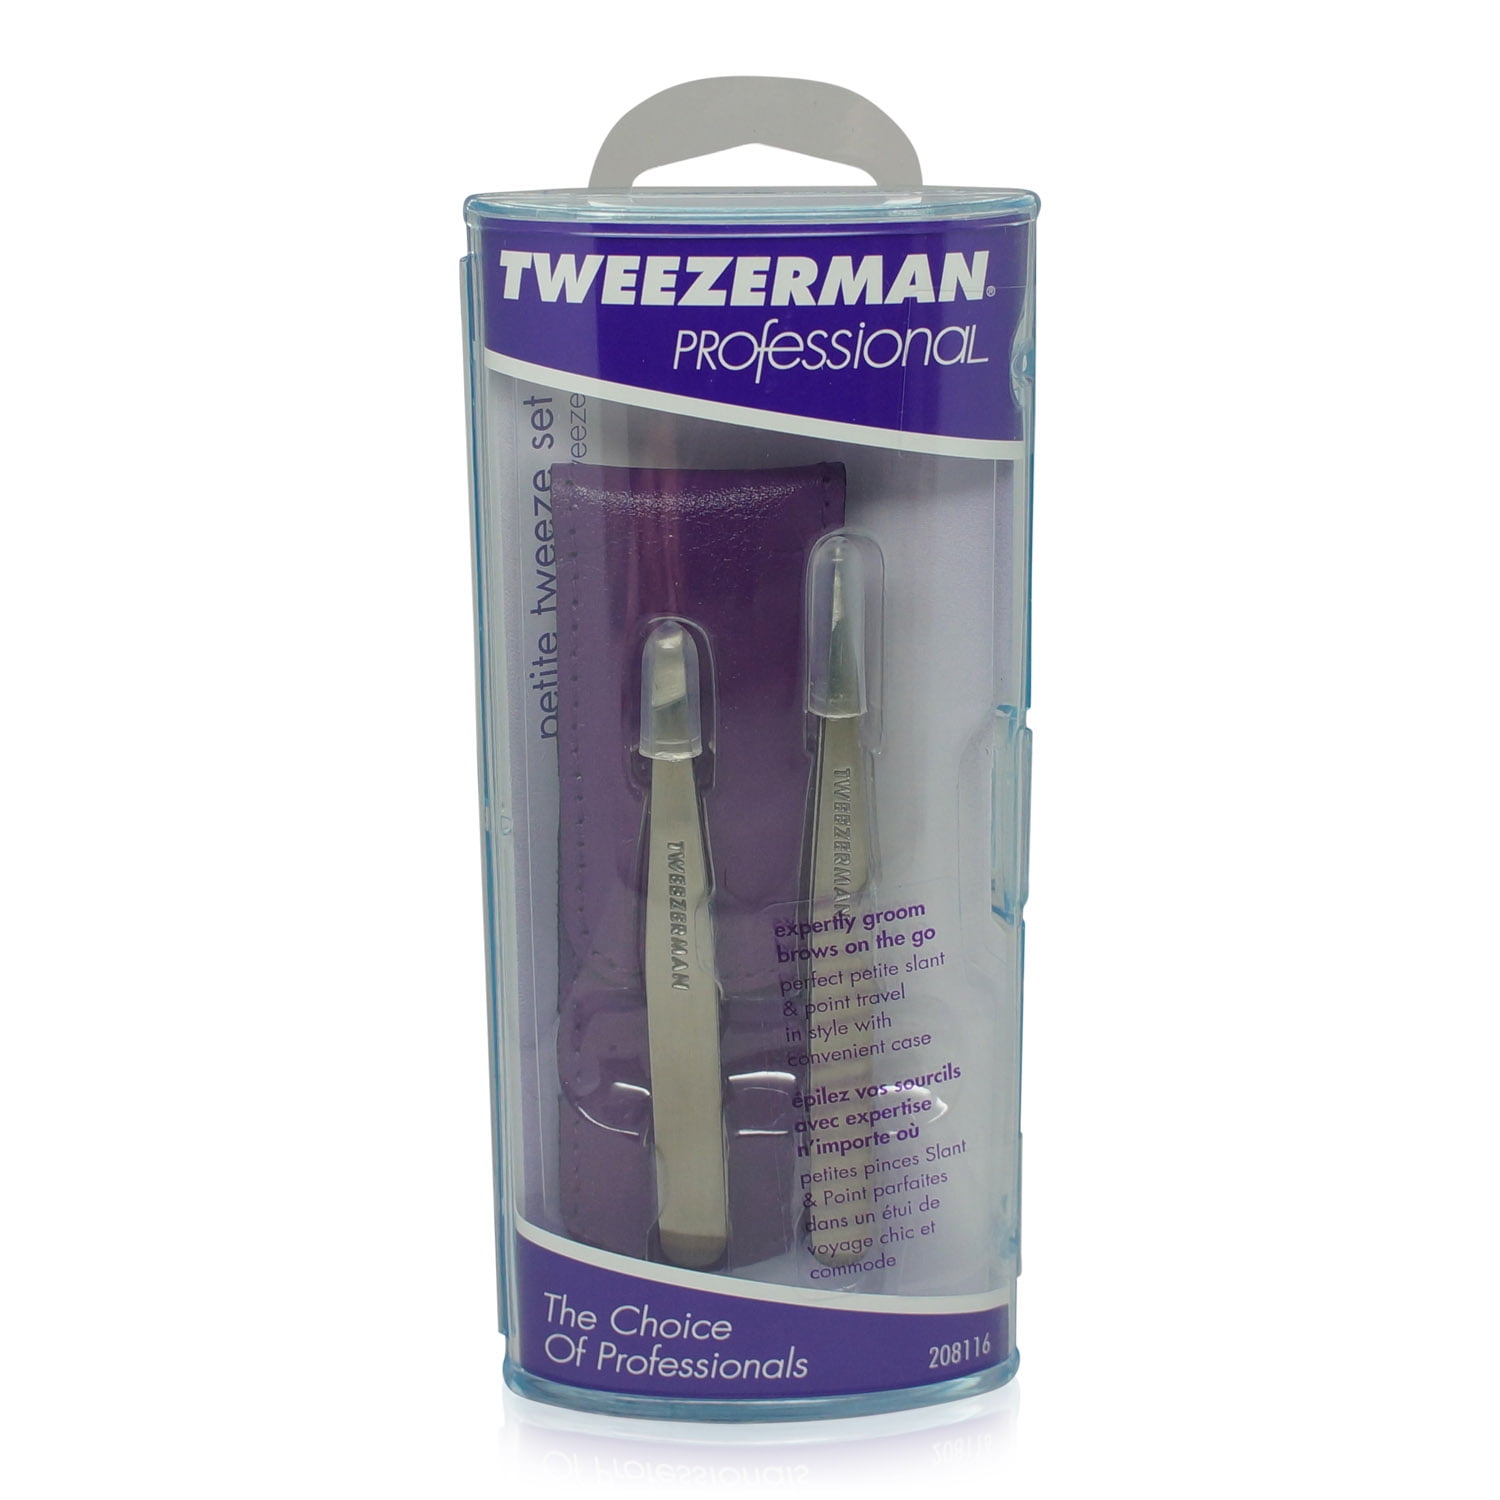 Tweezerman Petite Tweeze Set with Case